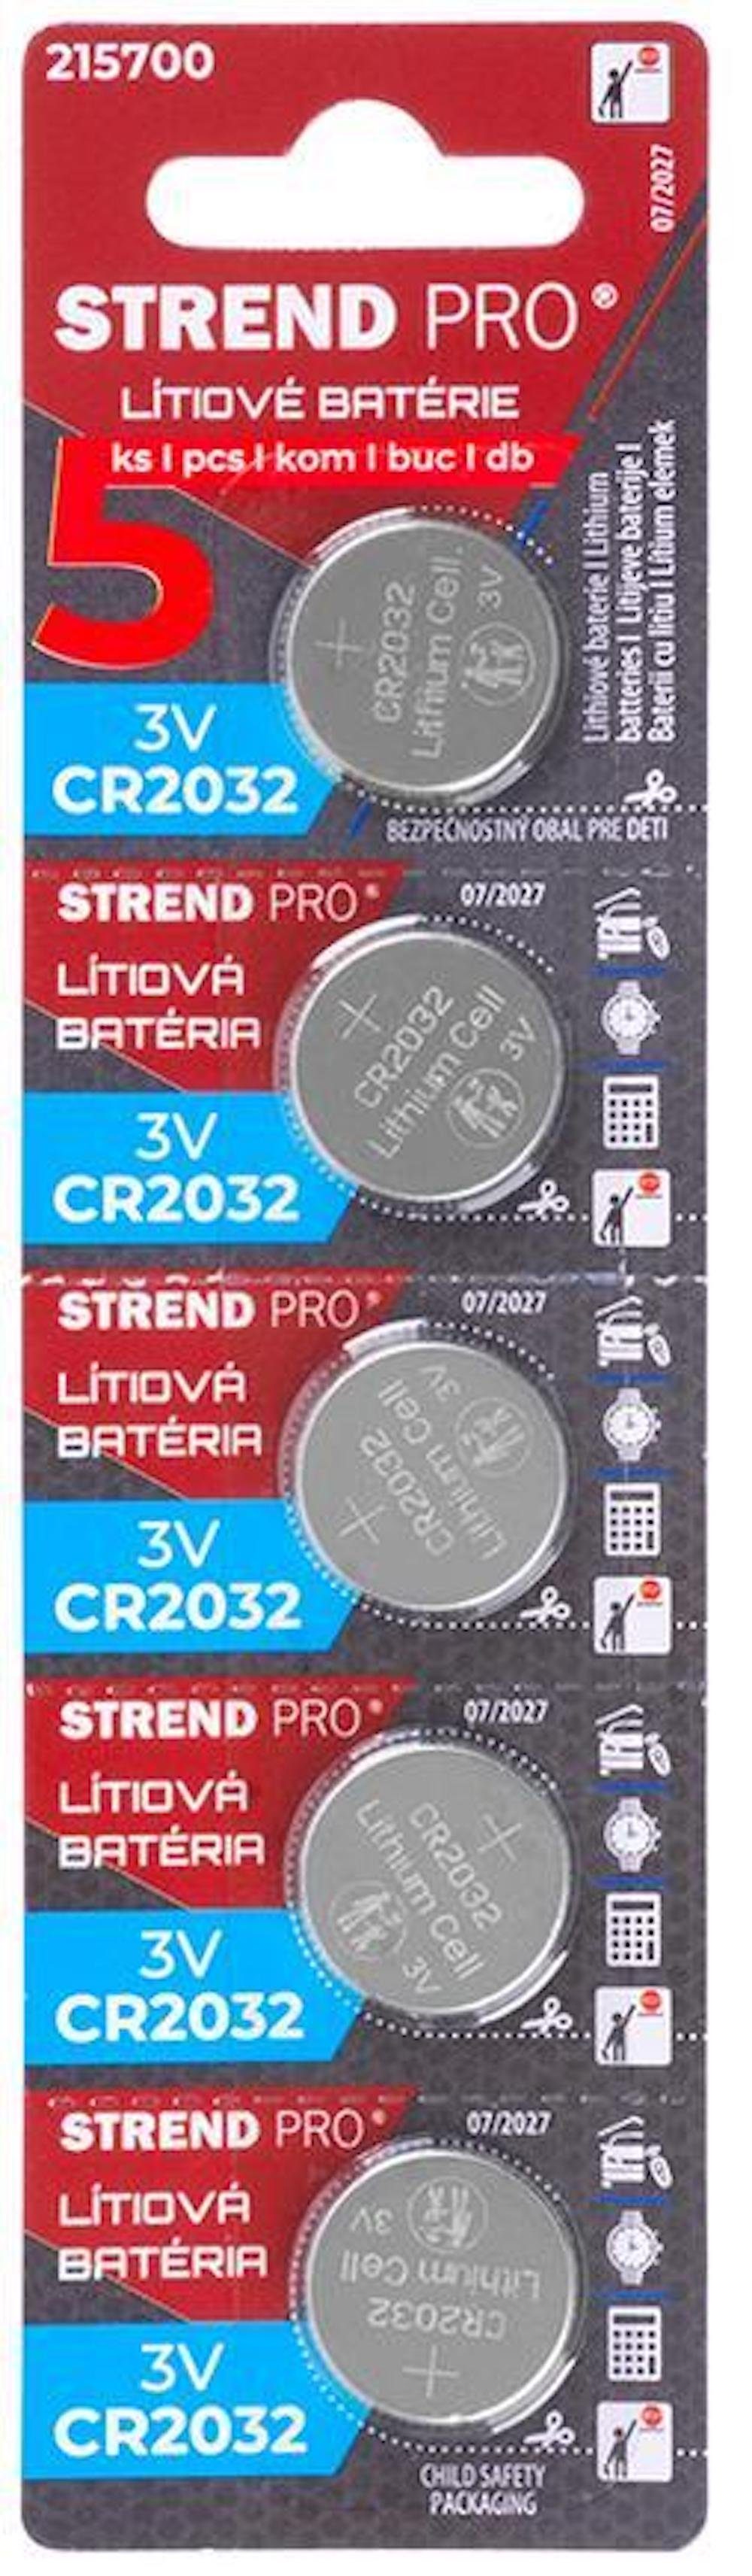 PROREGAL® Elektrowerkzeug-Set Batterien, Li-Mno2, 5 Stück, CR2032 | Elektronik-Tool-Kit